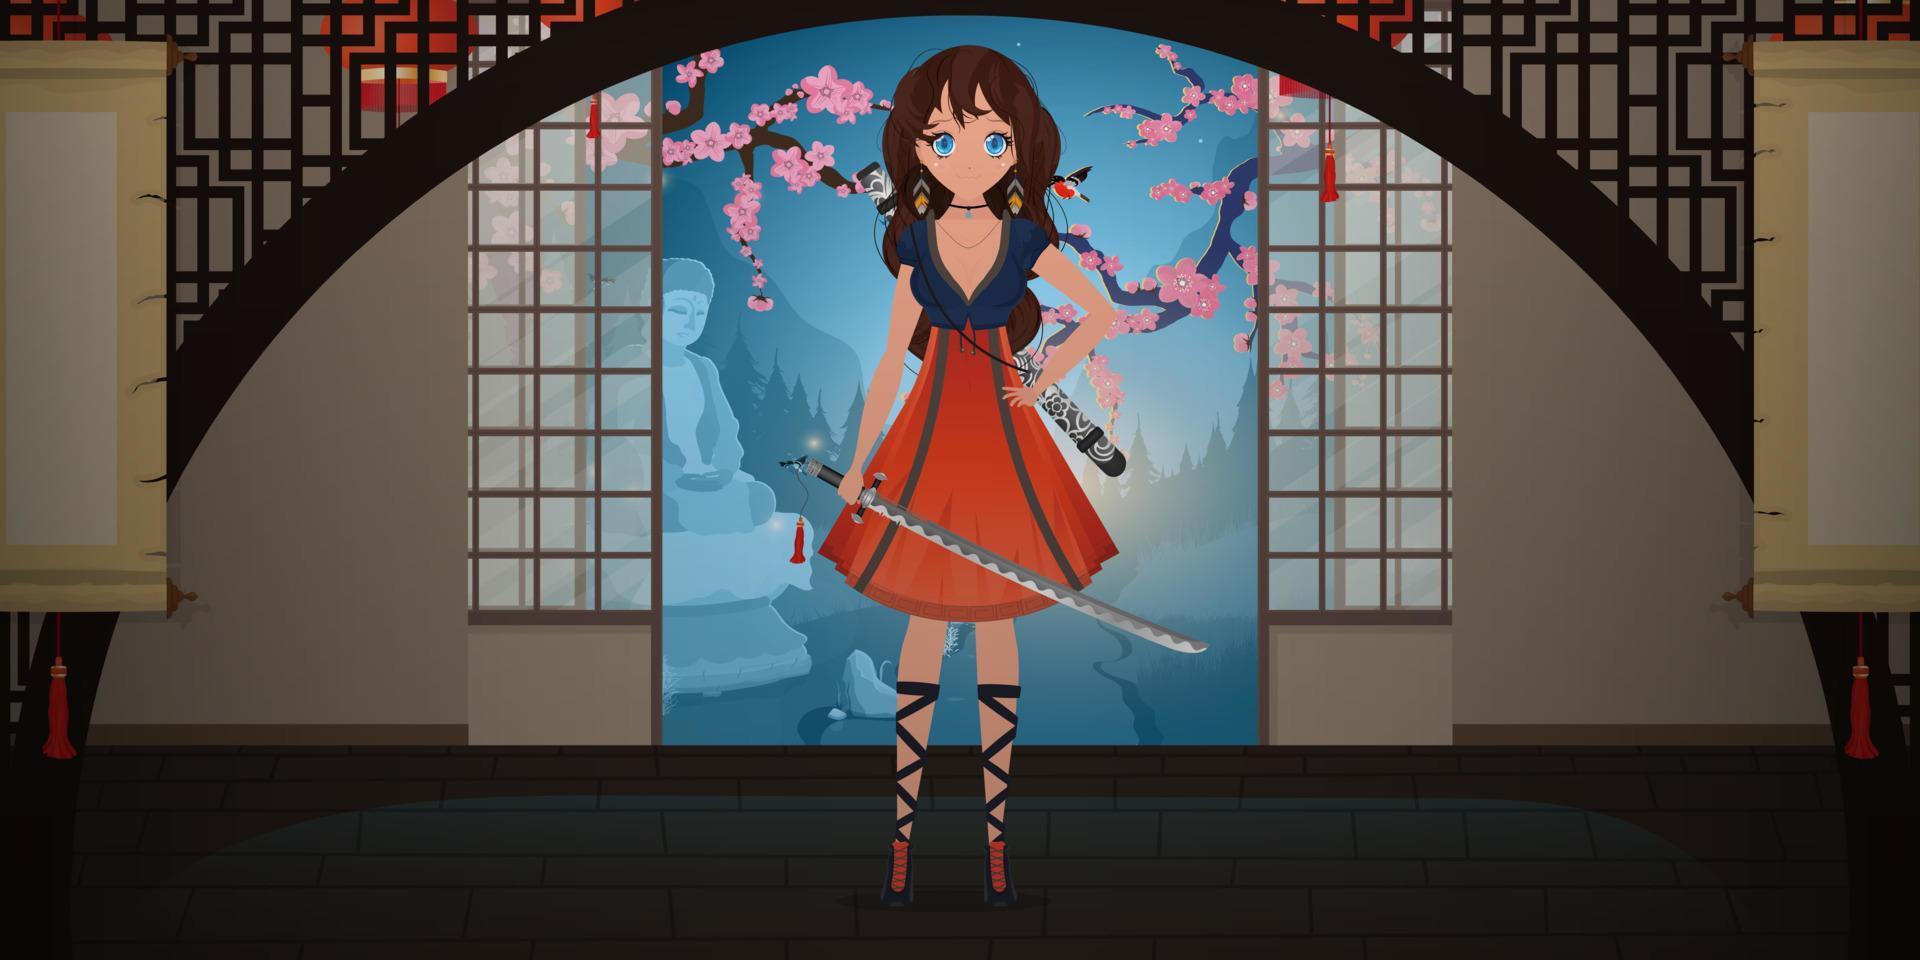 Mädchen mit einem Katana in einem blauen und roten Kleid. Anime-Samurai-Frau im japanischen Raum. Cartoon-Stil, Vektorillustration. vektor